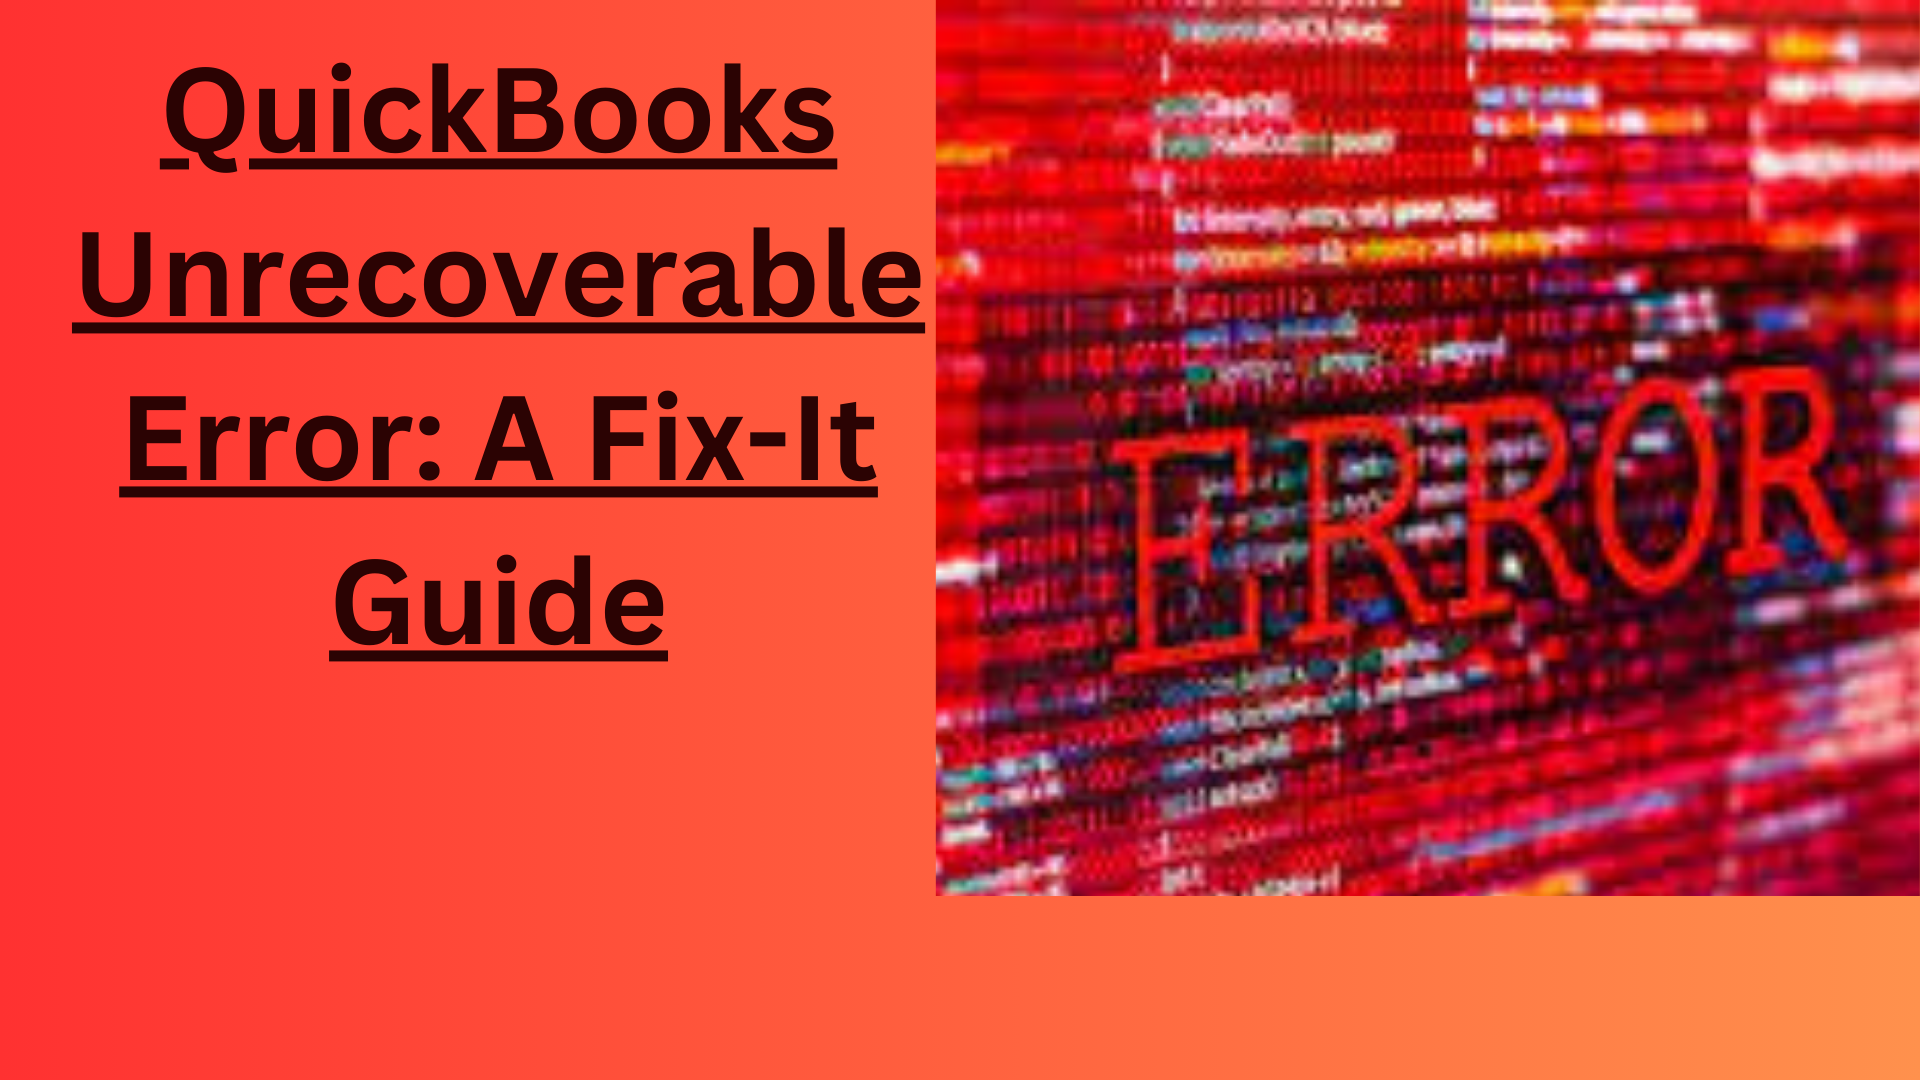 QuickBooks Unrecoverable Error: A Fix-It Guide